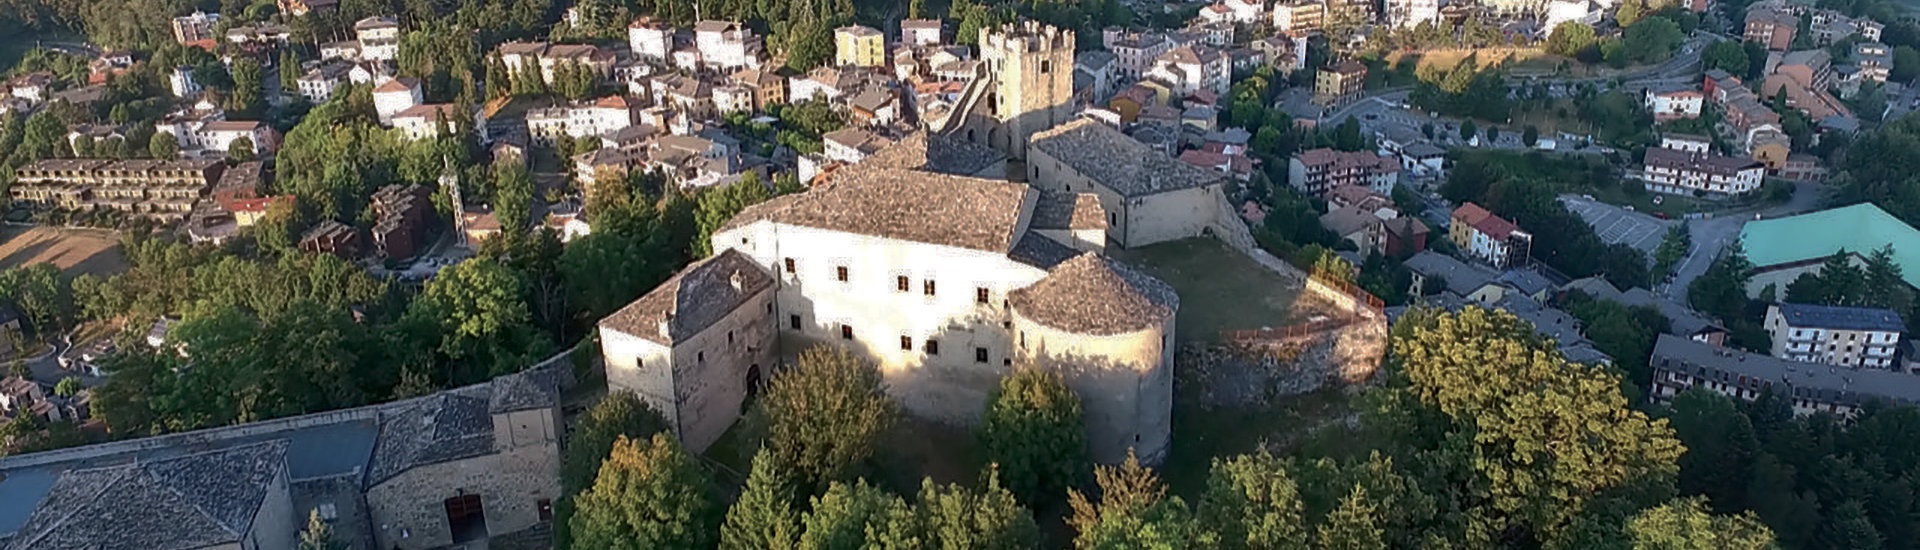 Rocca di Sestola - Panoramica aerea Castello di Sestola foto di: |Eugenio Soliani| - Gestore Castello